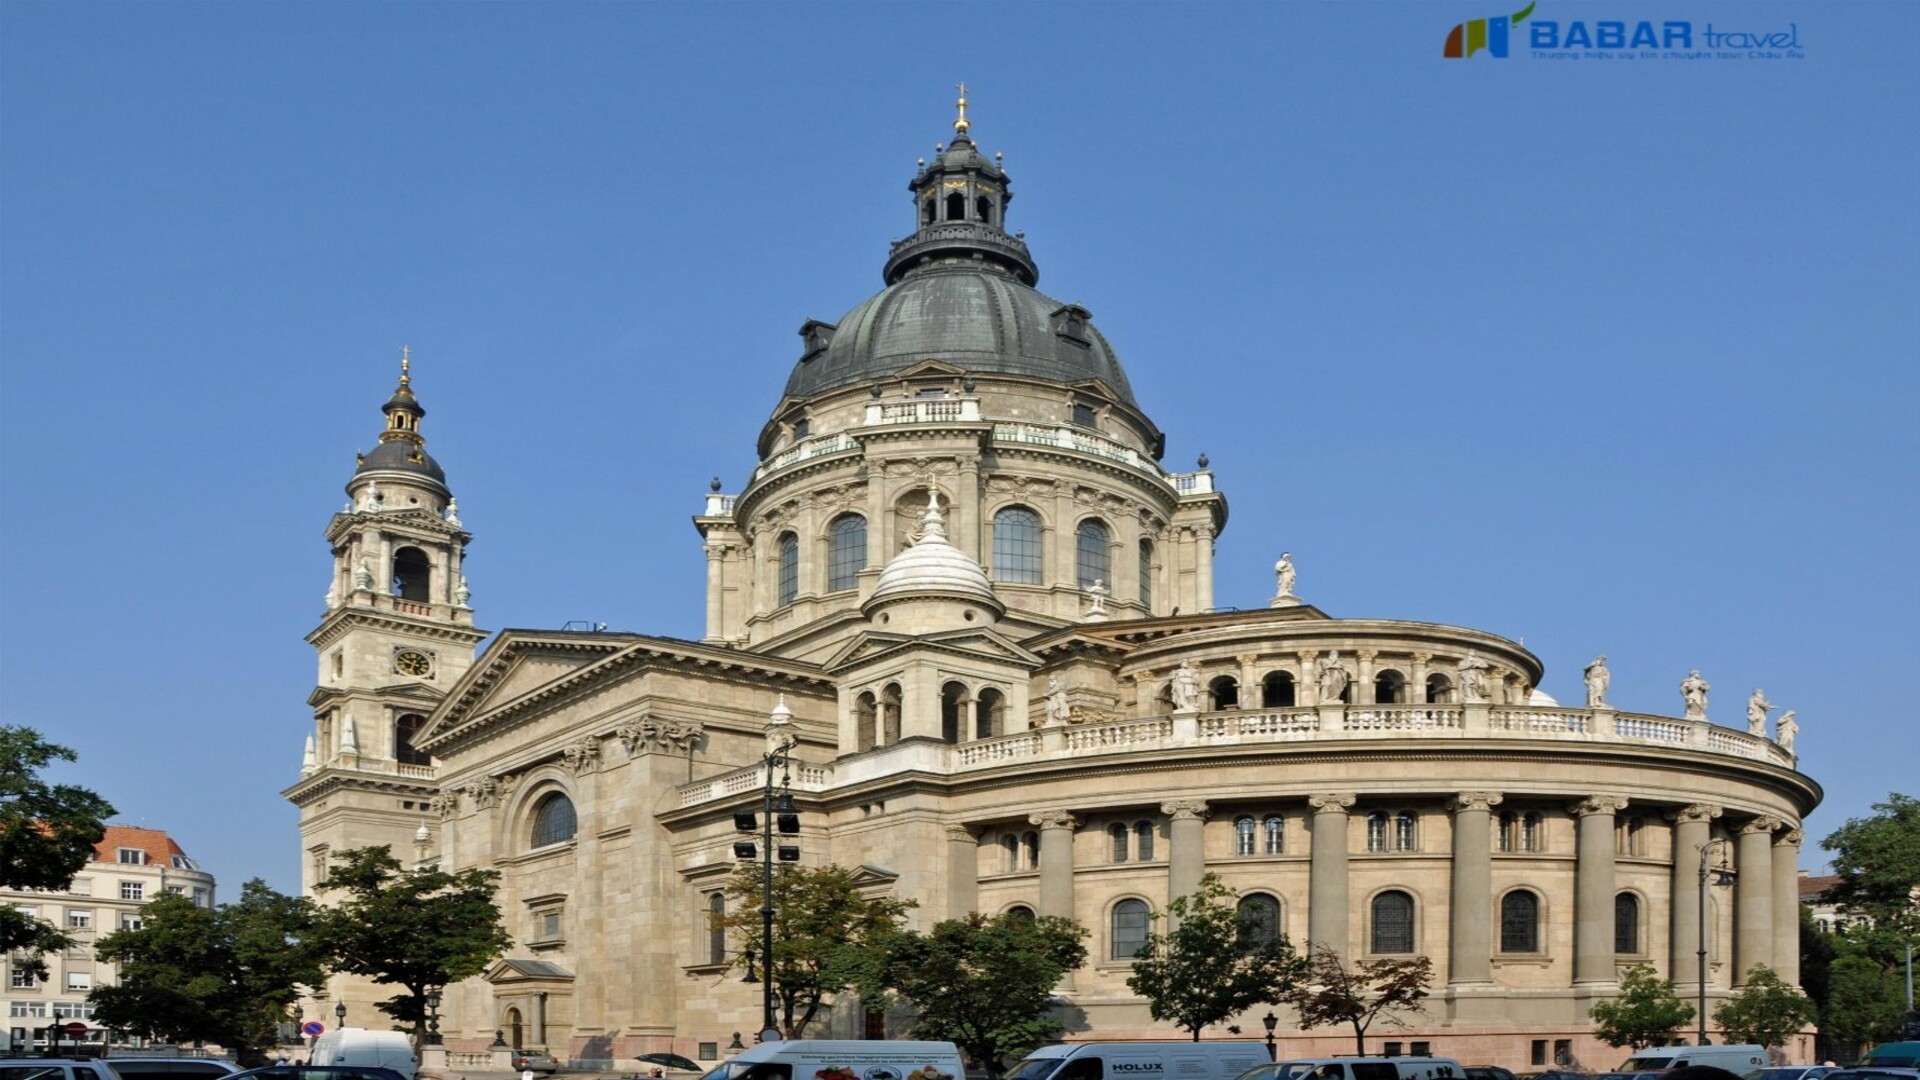 Cùng BabarTravel khám phá St. Stephen’s Basilica - Nhà thờ Công giáo La Mã lớn nhất Budapest